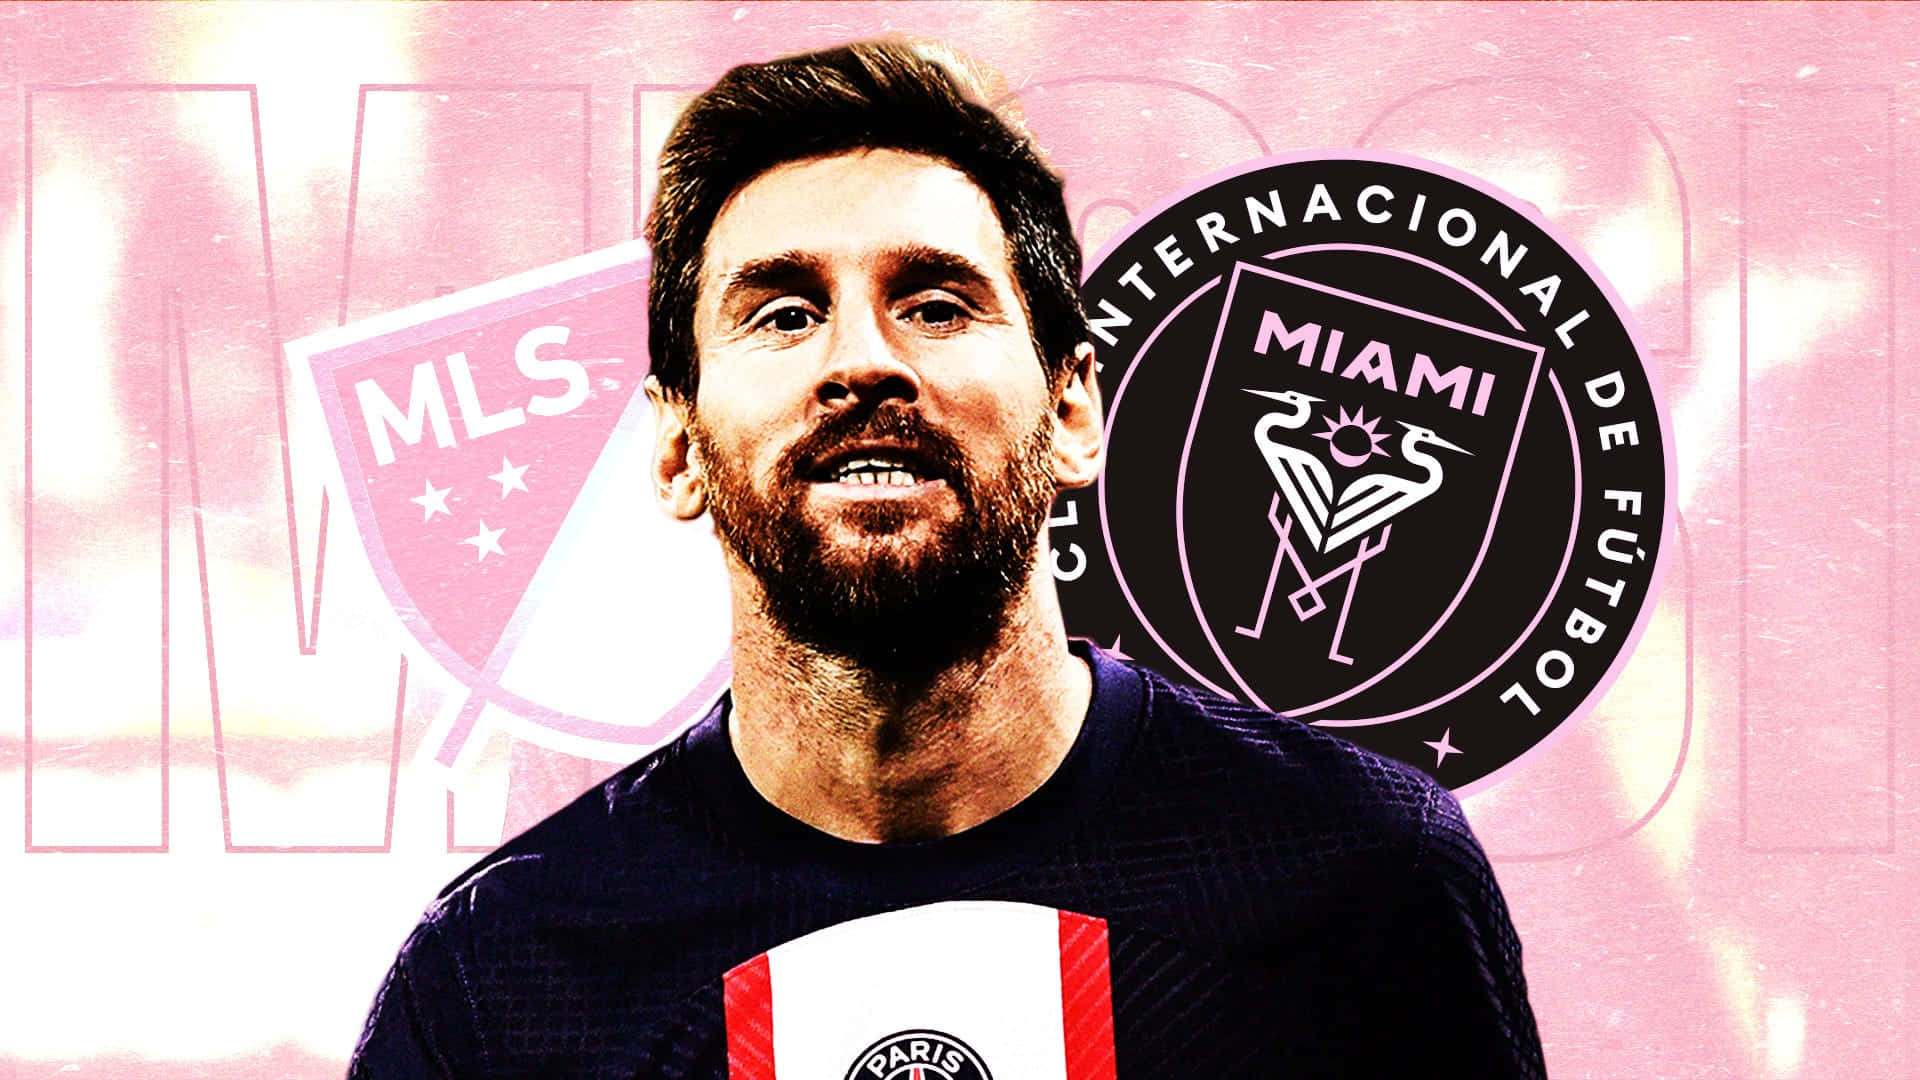 Messi Inter Miami M L S Transfer Rumors Wallpaper